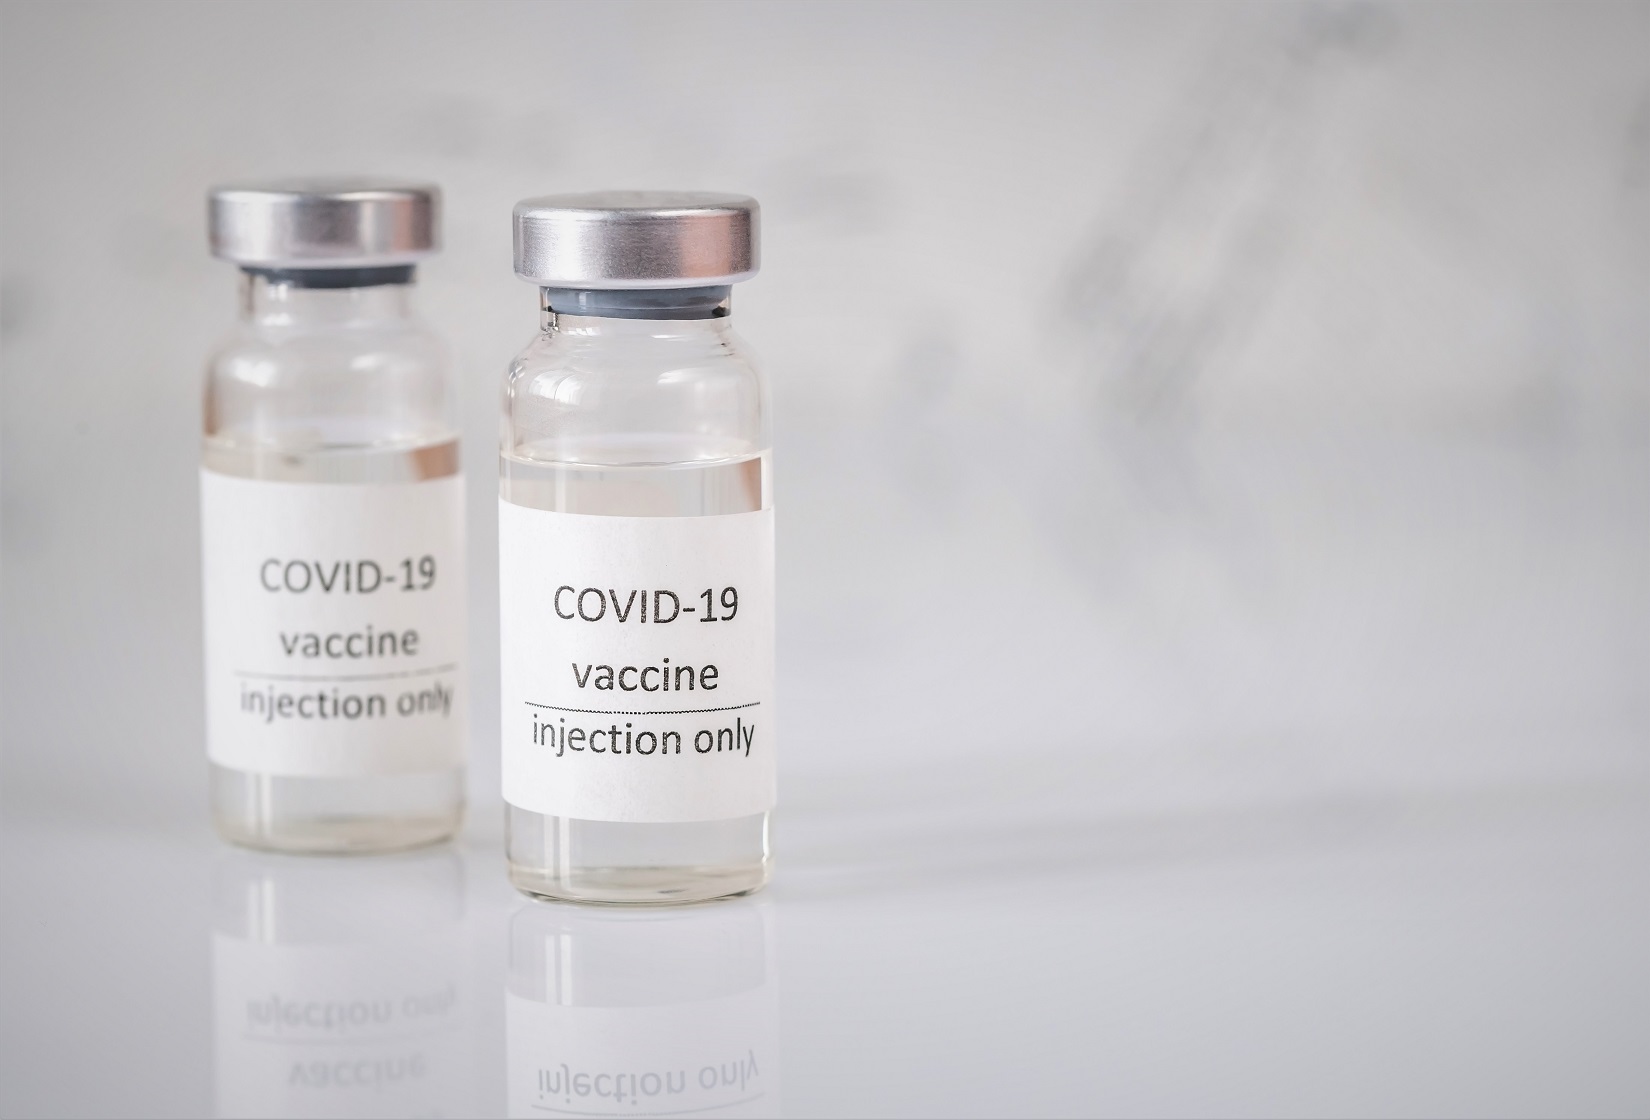 coronavirus vaccine YBG7VYA Pfizer Pfizer